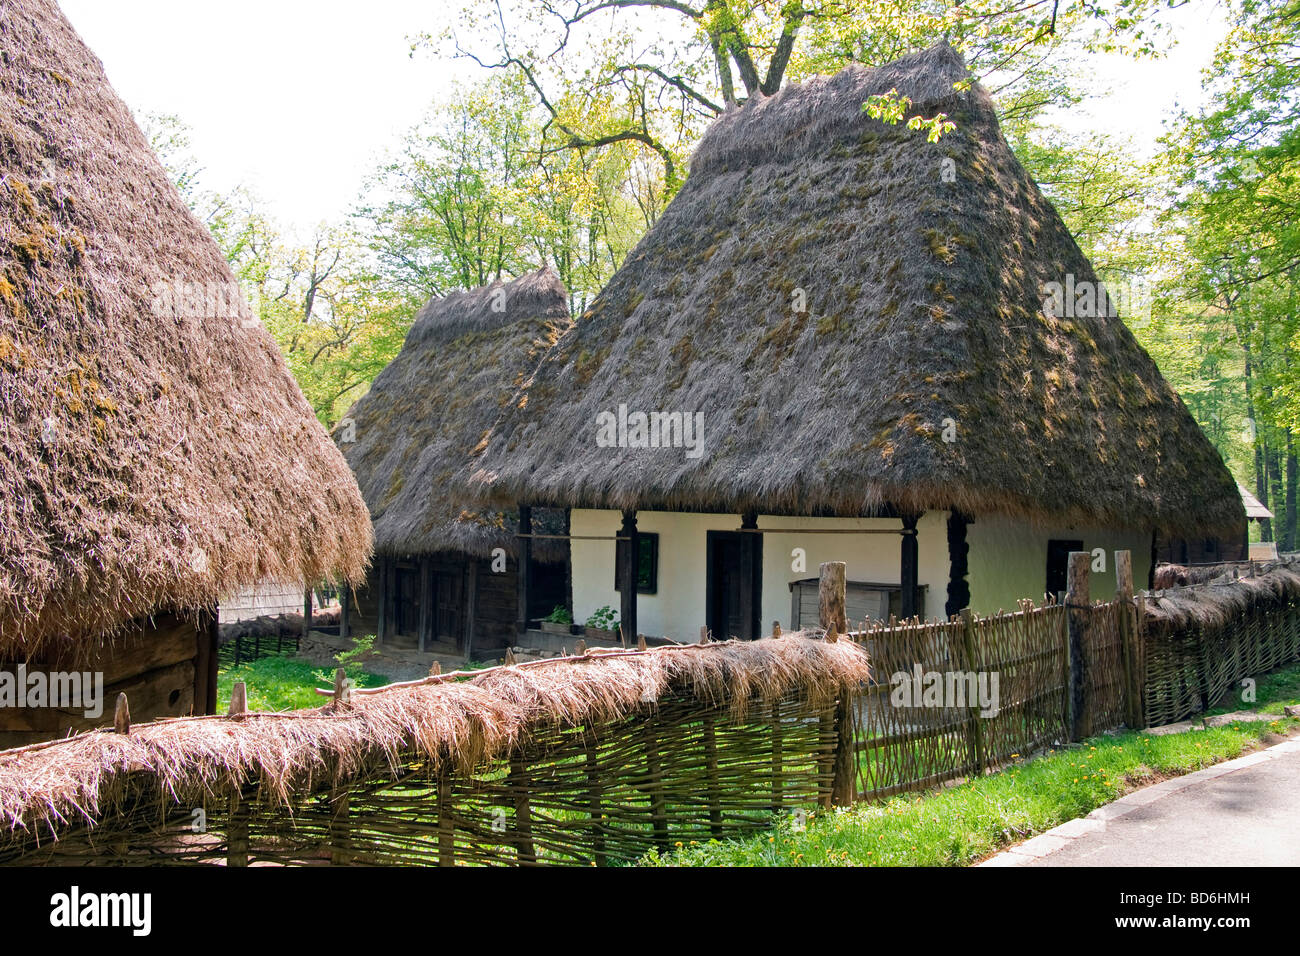 La Romania è il museo di musica tradizionale della civiltà contadina, homestead con tetto di paglia dimora, a Sibiu in Transilvania Foto Stock